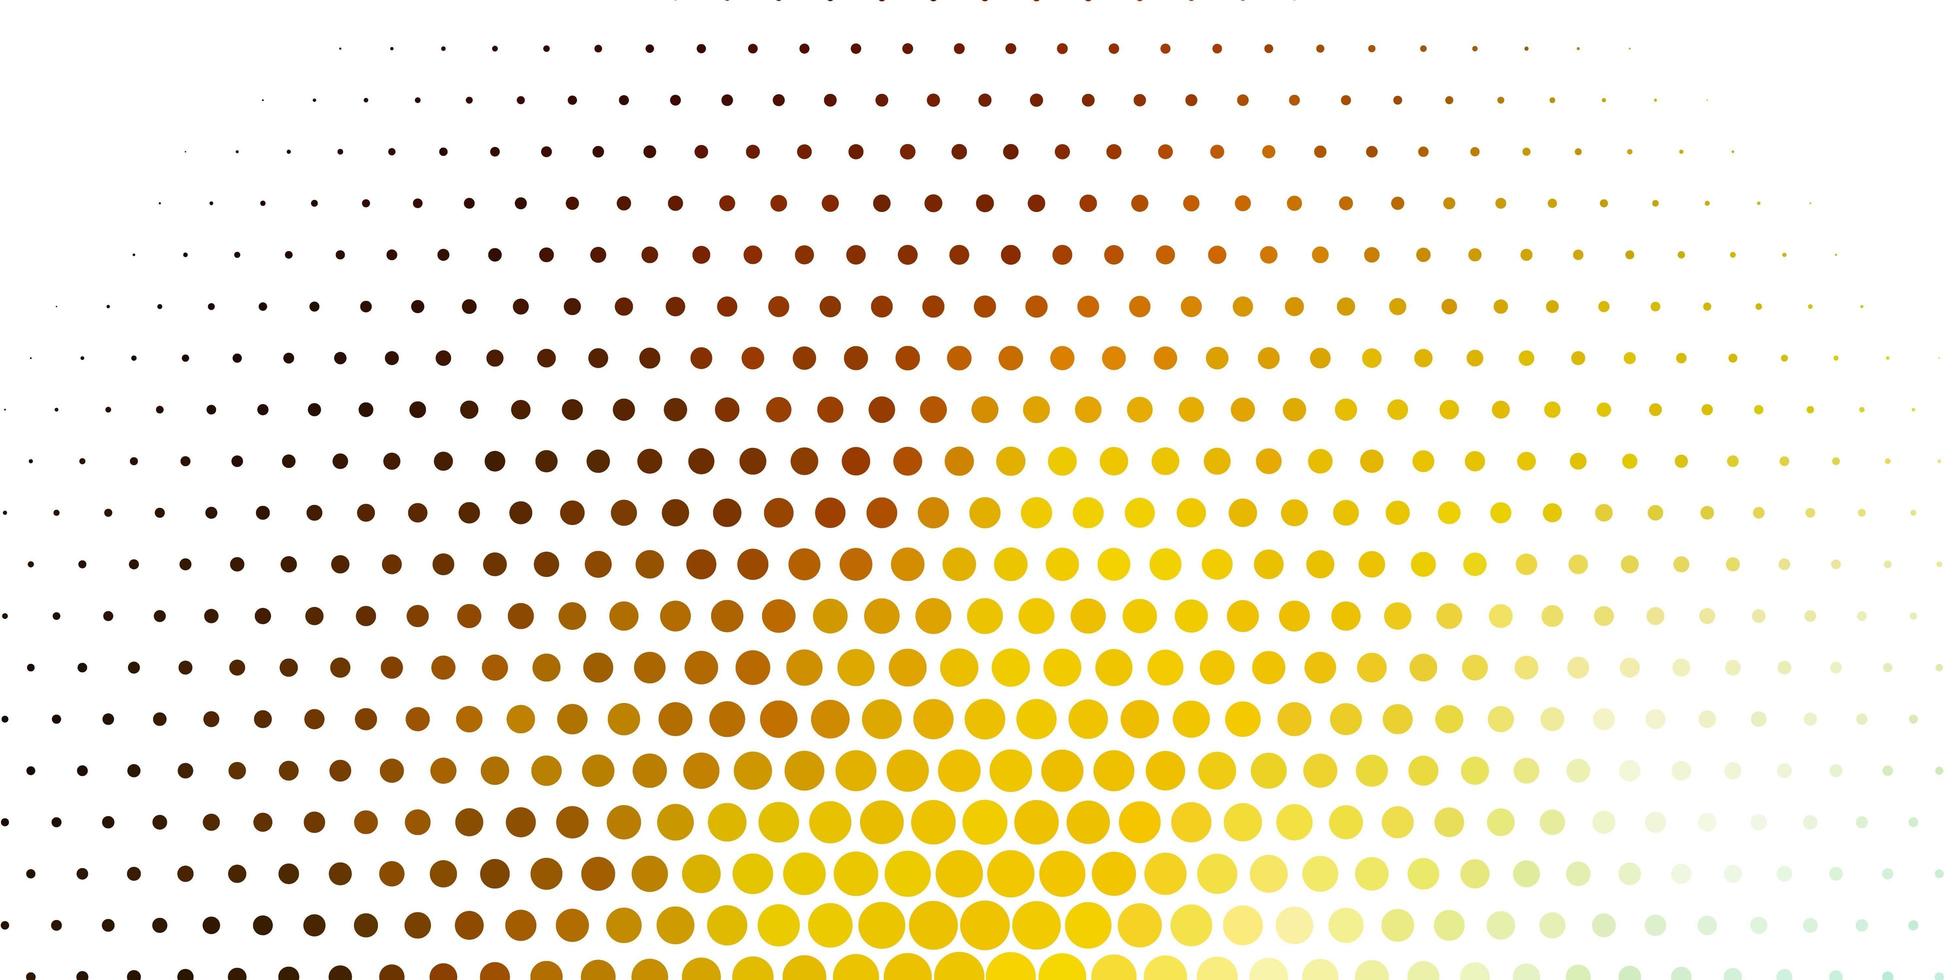 lichtblauw, geel vectorpatroon met bollen. kleurrijke illustratie met gradiëntstippen in aardstijl. ontwerp voor posters, banners. vector